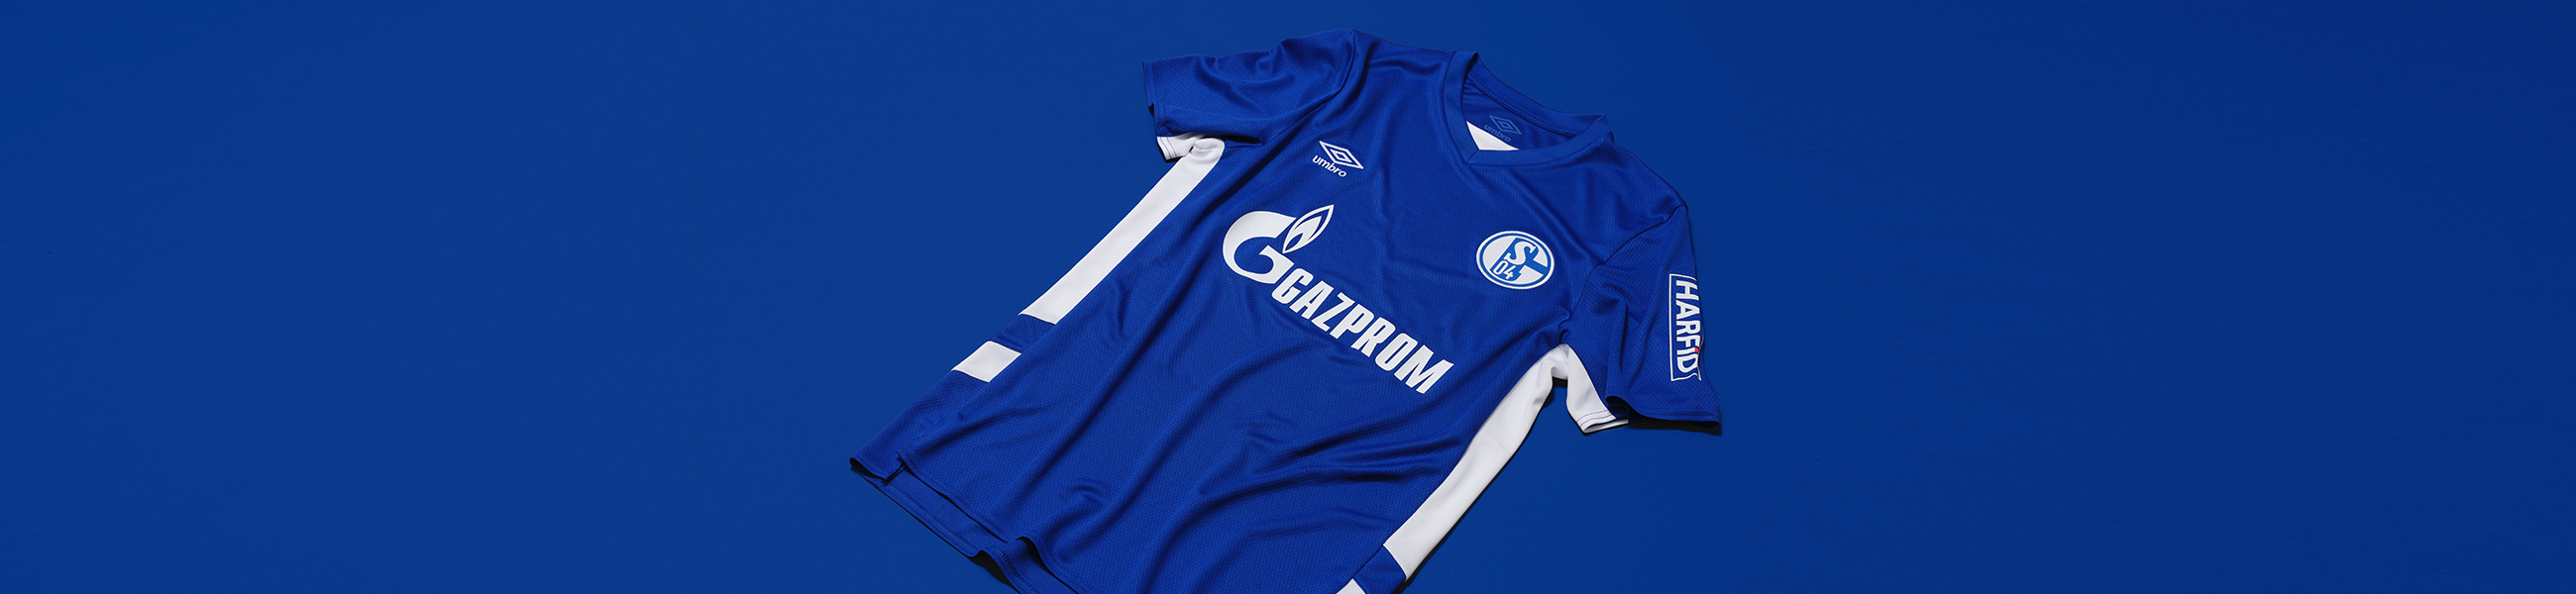 Umbro Schalke 04 Warm Up Jersey 21 22 weiß S04 Fußballtrikot Fan Shirt S-3XL 